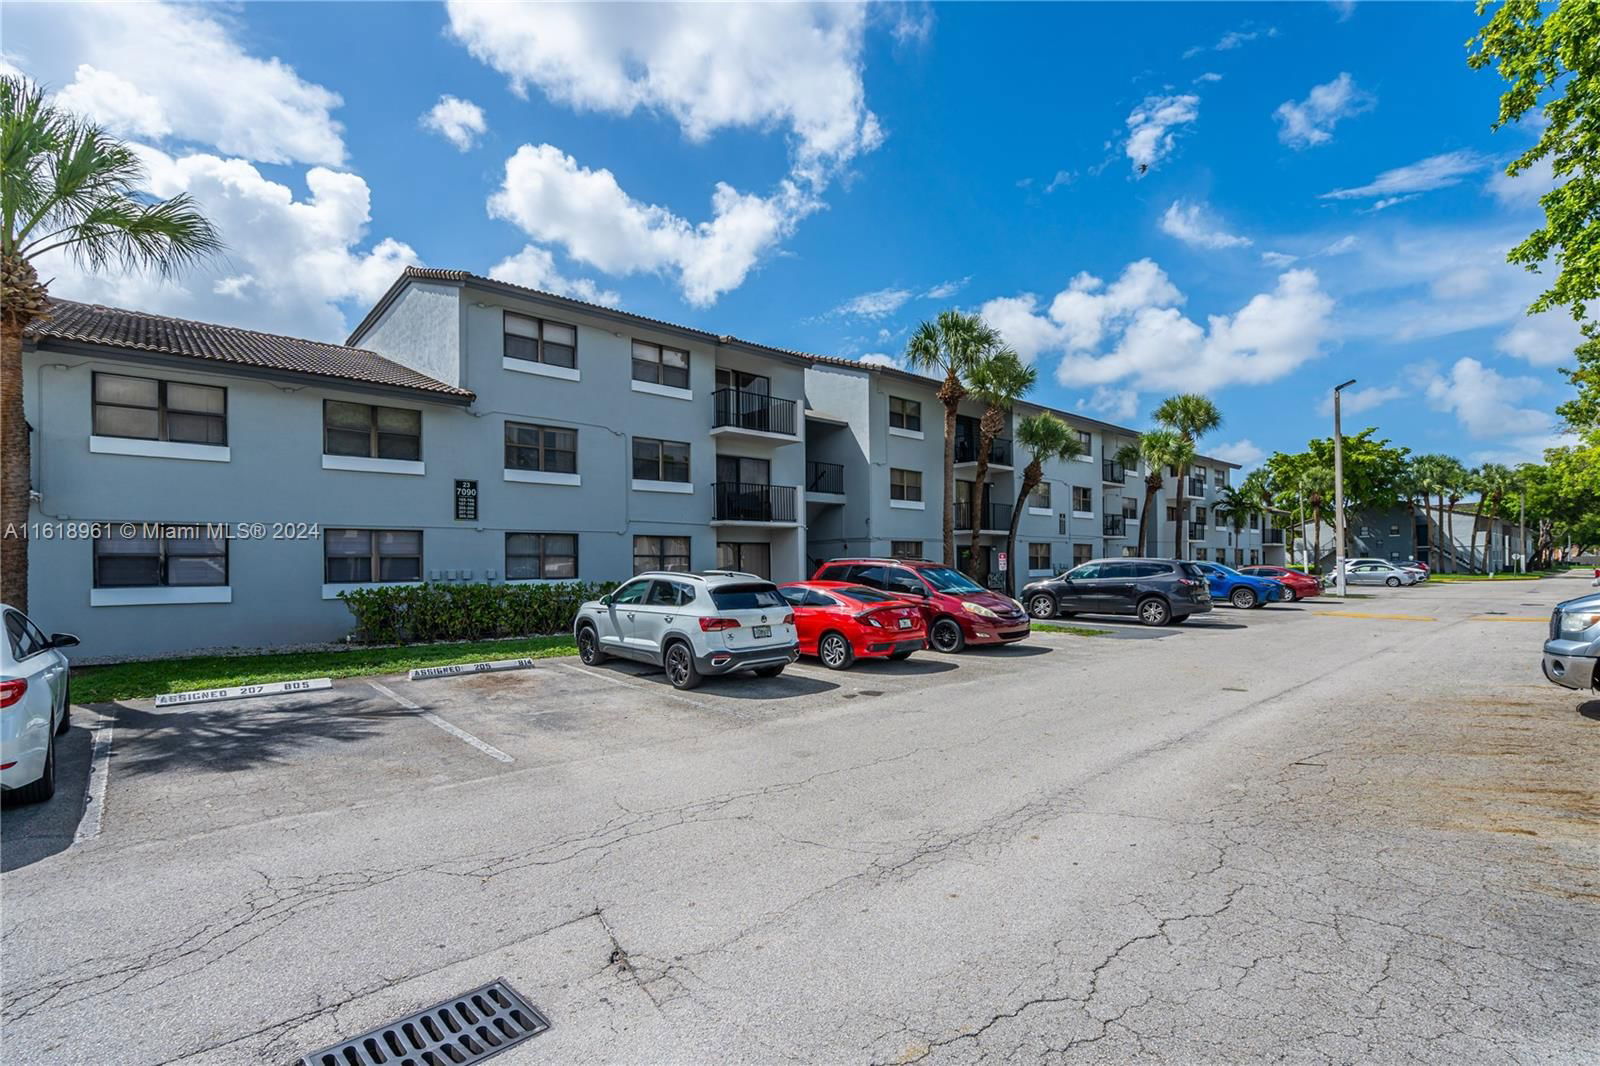 Real estate property located at 7090 179th St #104, Miami-Dade County, VILLA BELLINI CONDO, Hialeah, FL